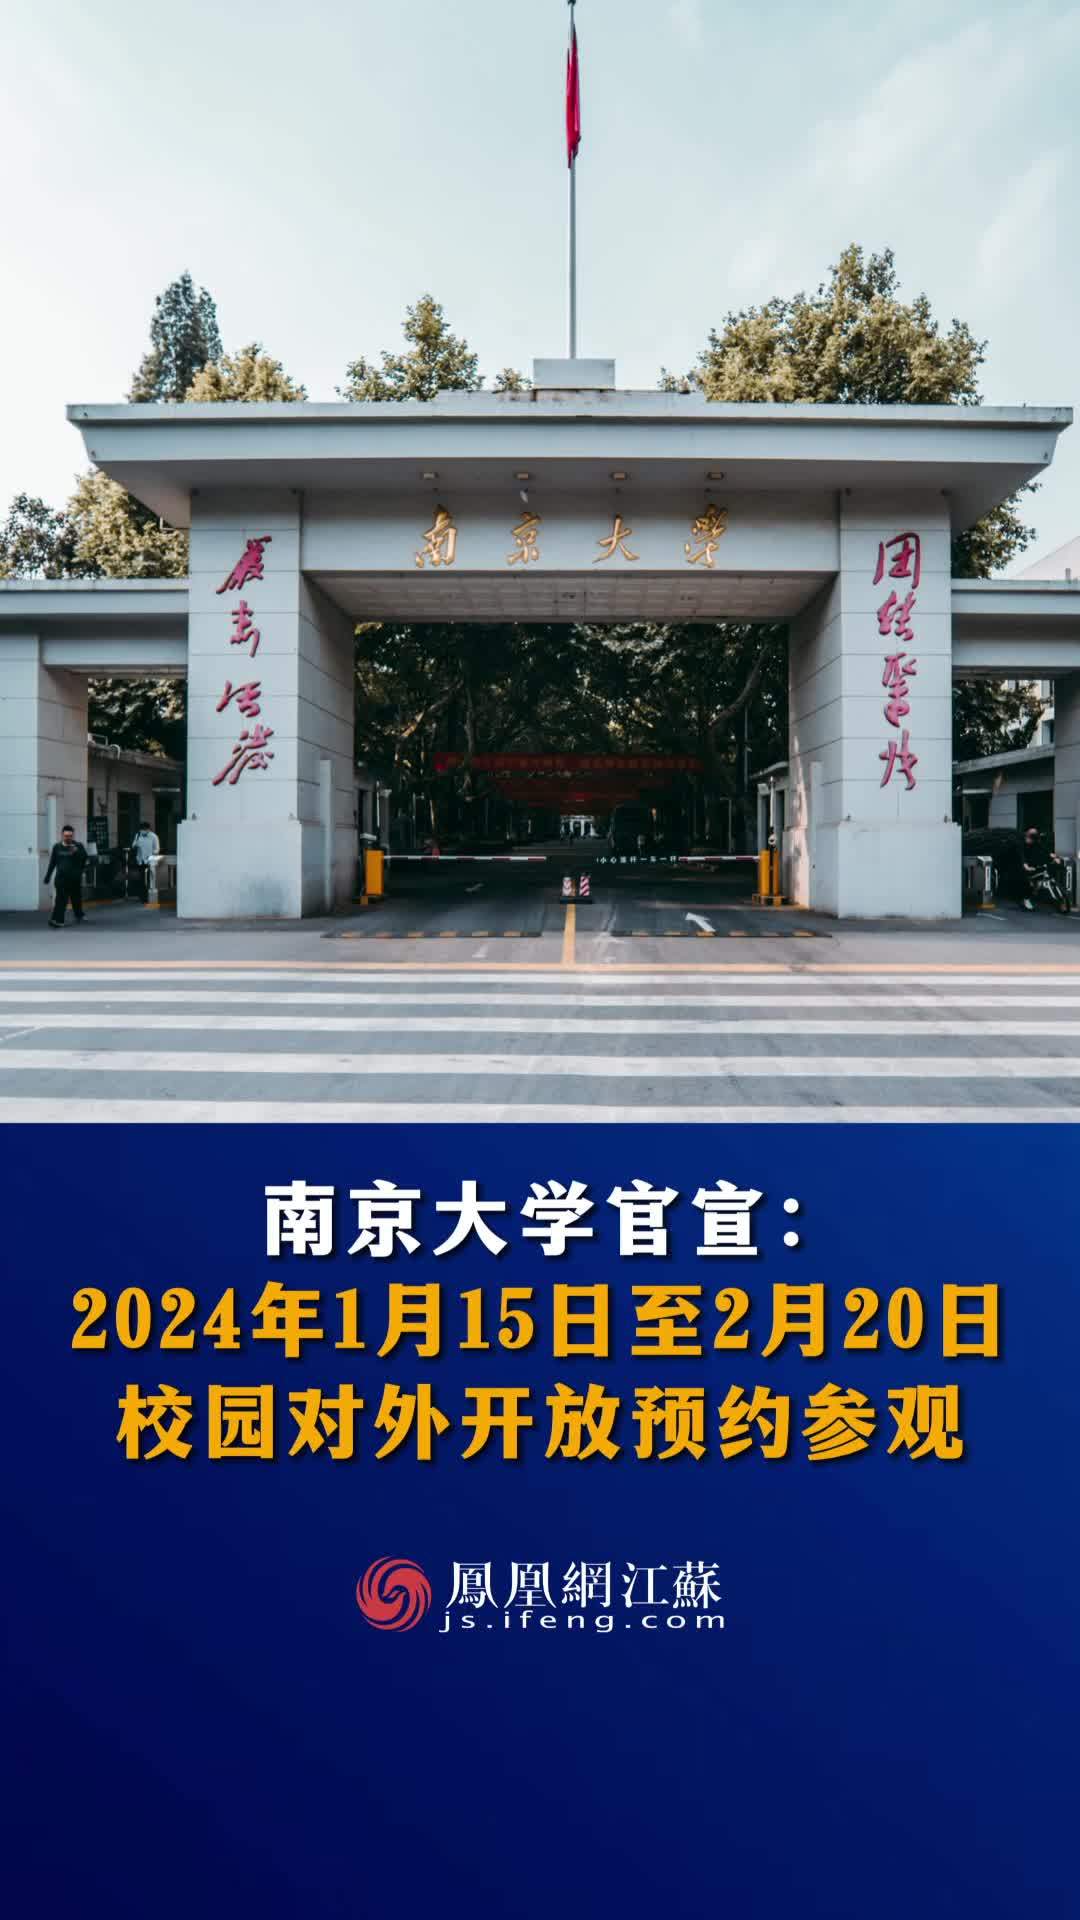 #江苏Feng时刻  南京大学官宣：1月15日至2月20日，校园对外开放预约参观。#南京大学 #校园开放日